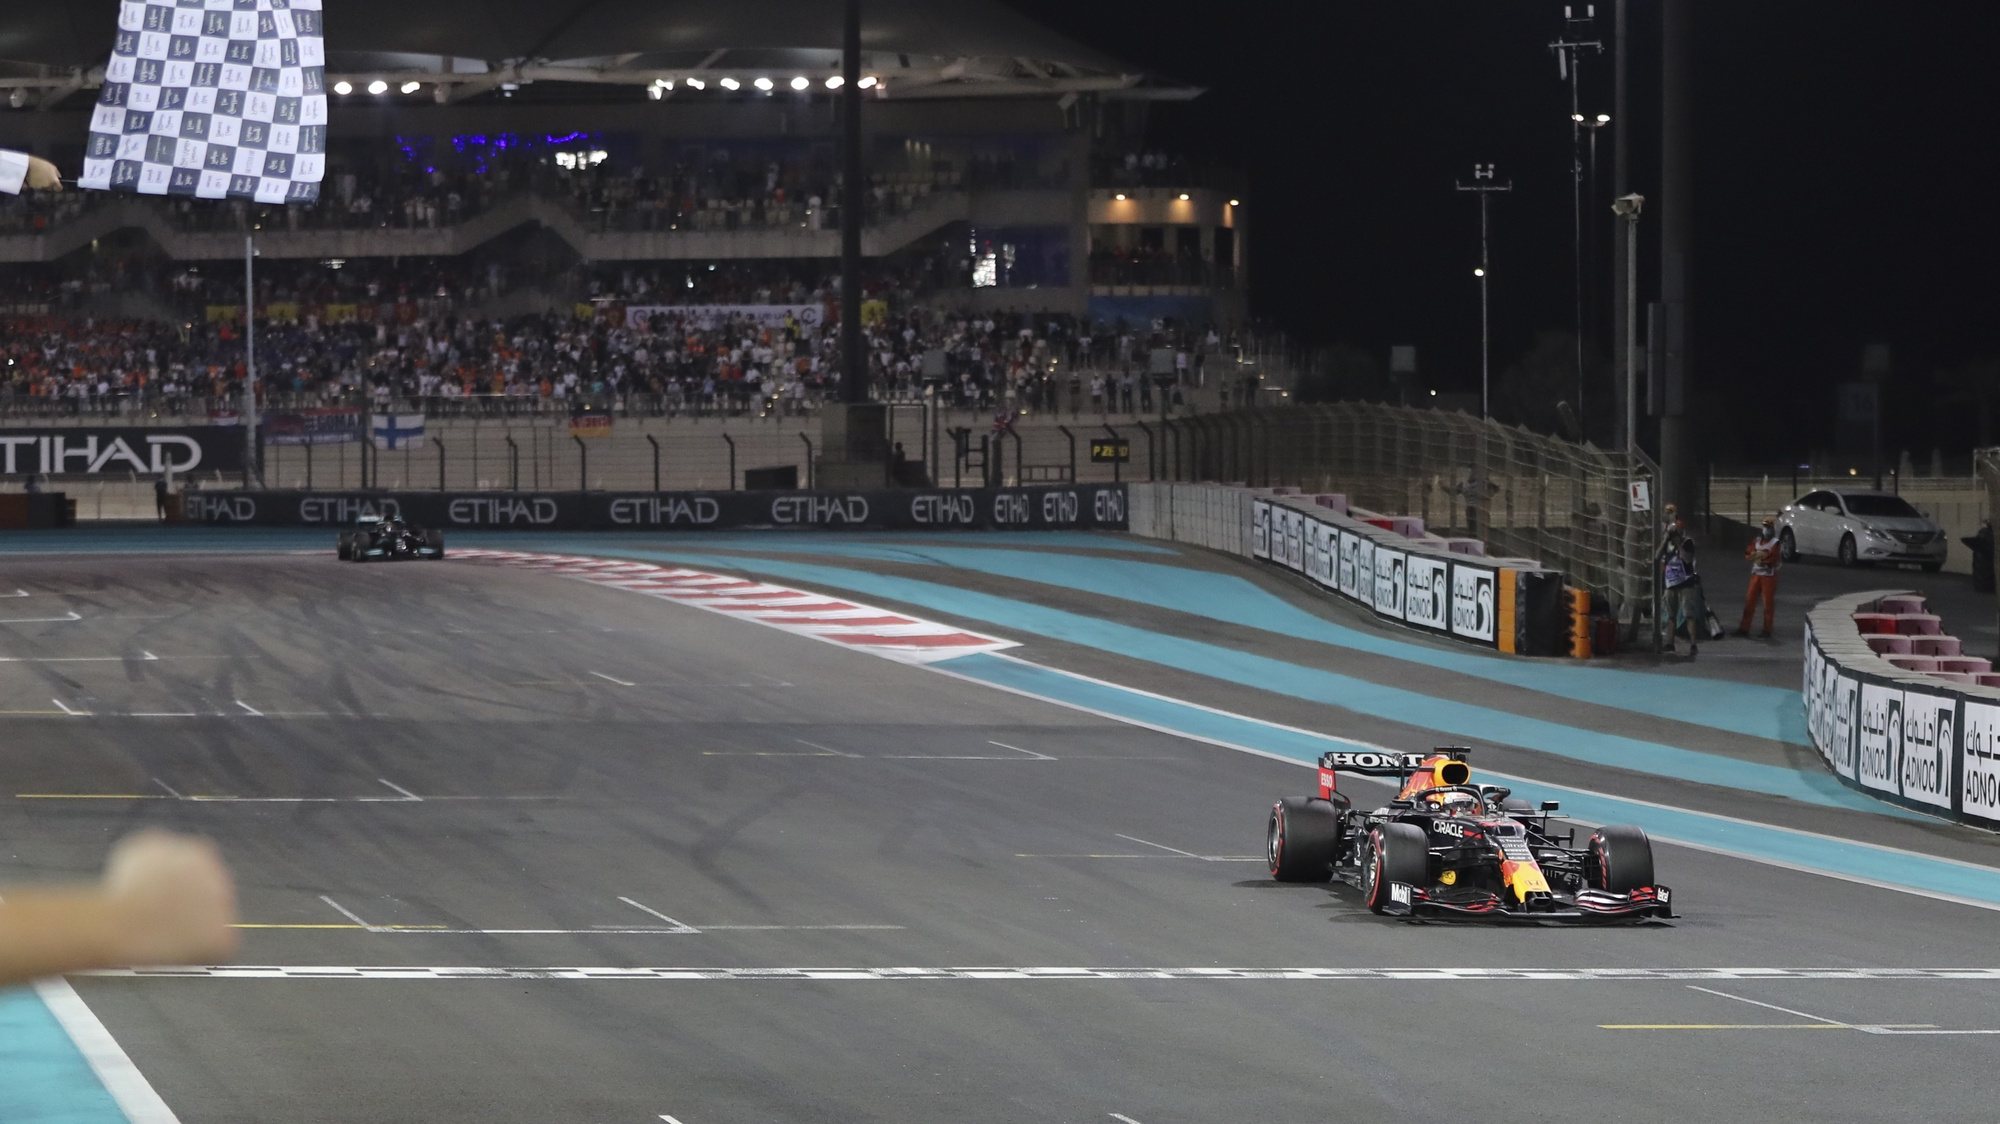 o holandês Max Verstappen conquistou o primeiro título da carreira após ultrapassar o britânico Lewis Hamilton